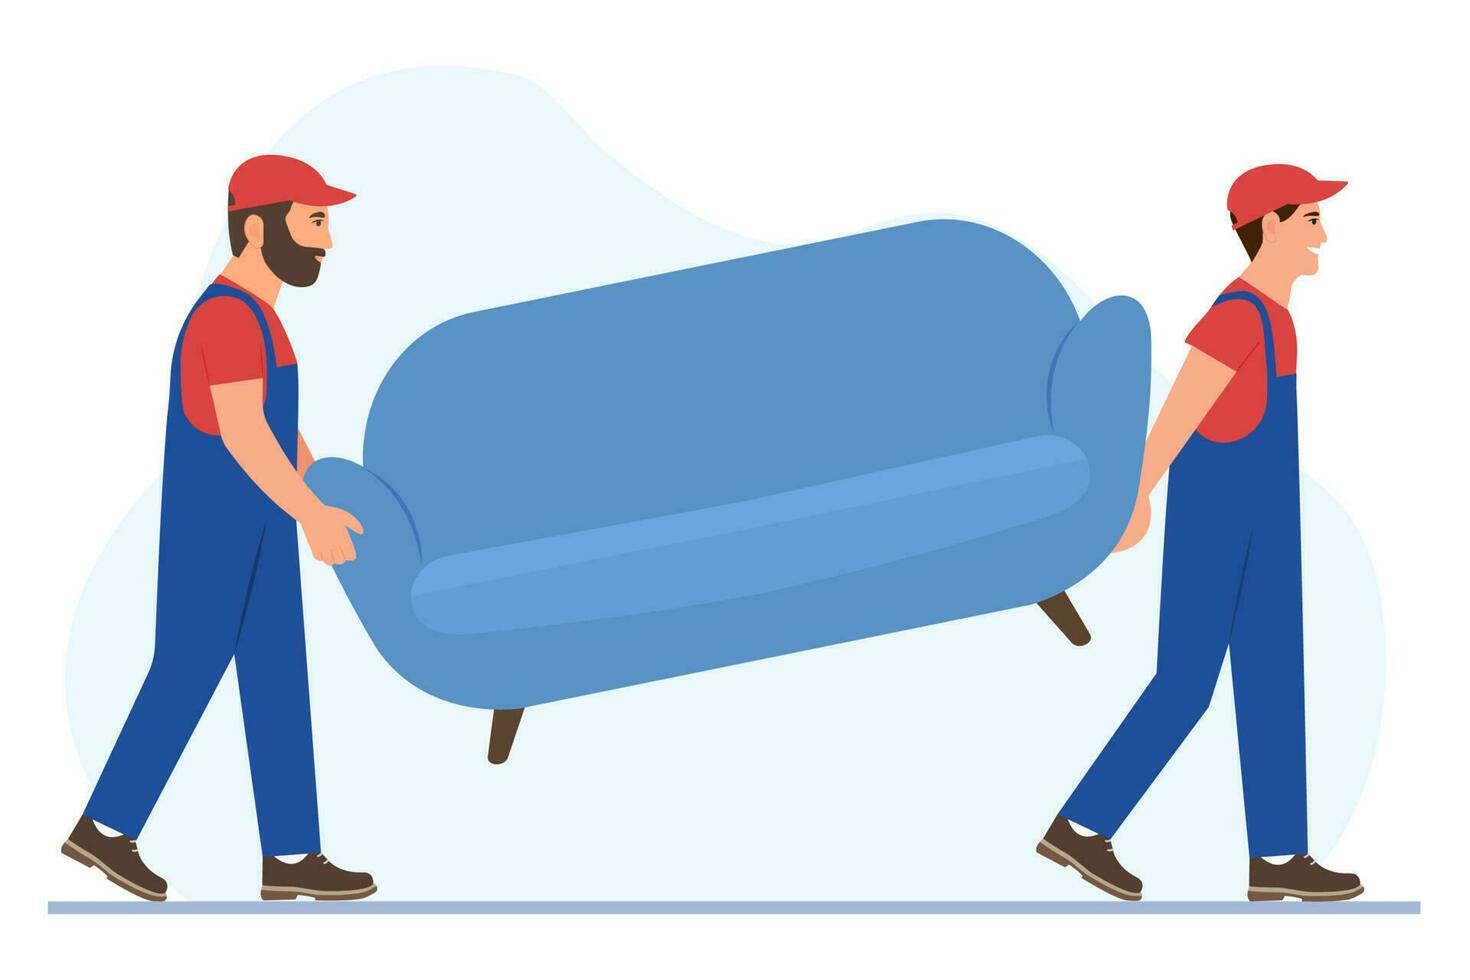 flyttare bära en soffa. rör på sig service. arbetare bär enhetlig bära möbel. leverans och omlokalisering service begrepp. vektor illustration